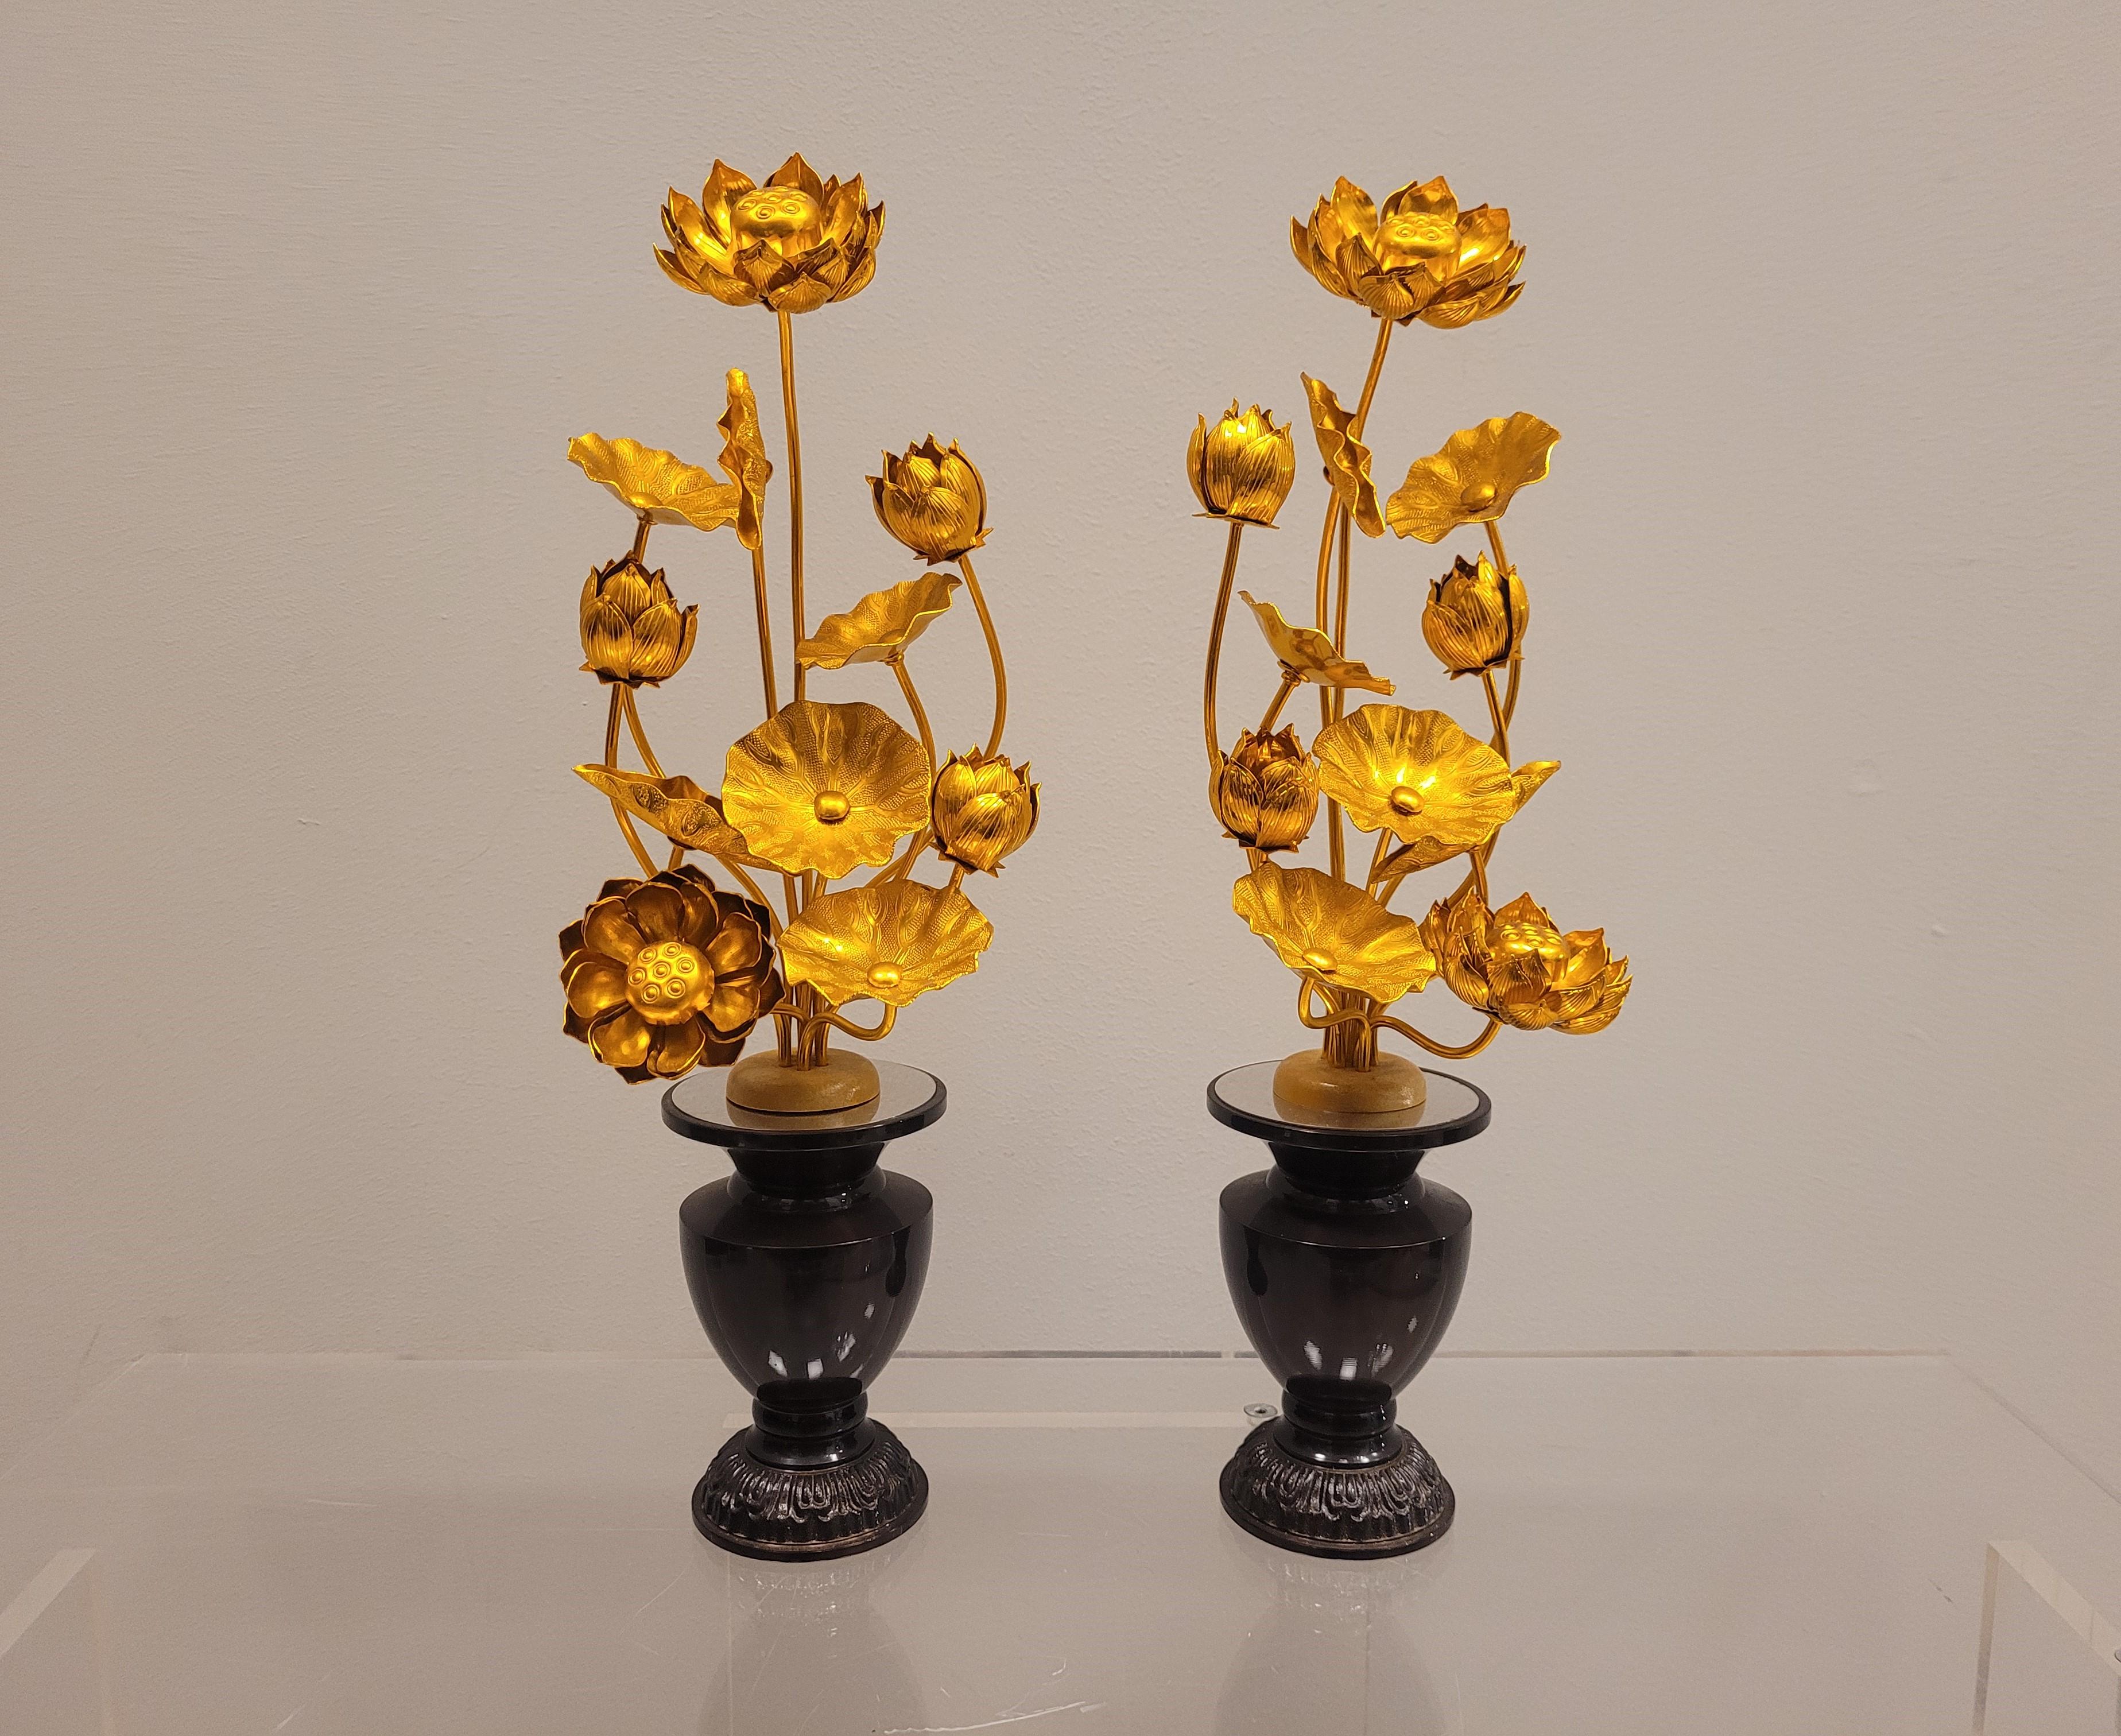 Spectaculaire paire de vases de temple remplis de fleurs de lotus dorées. Cet ensemble est appelé 